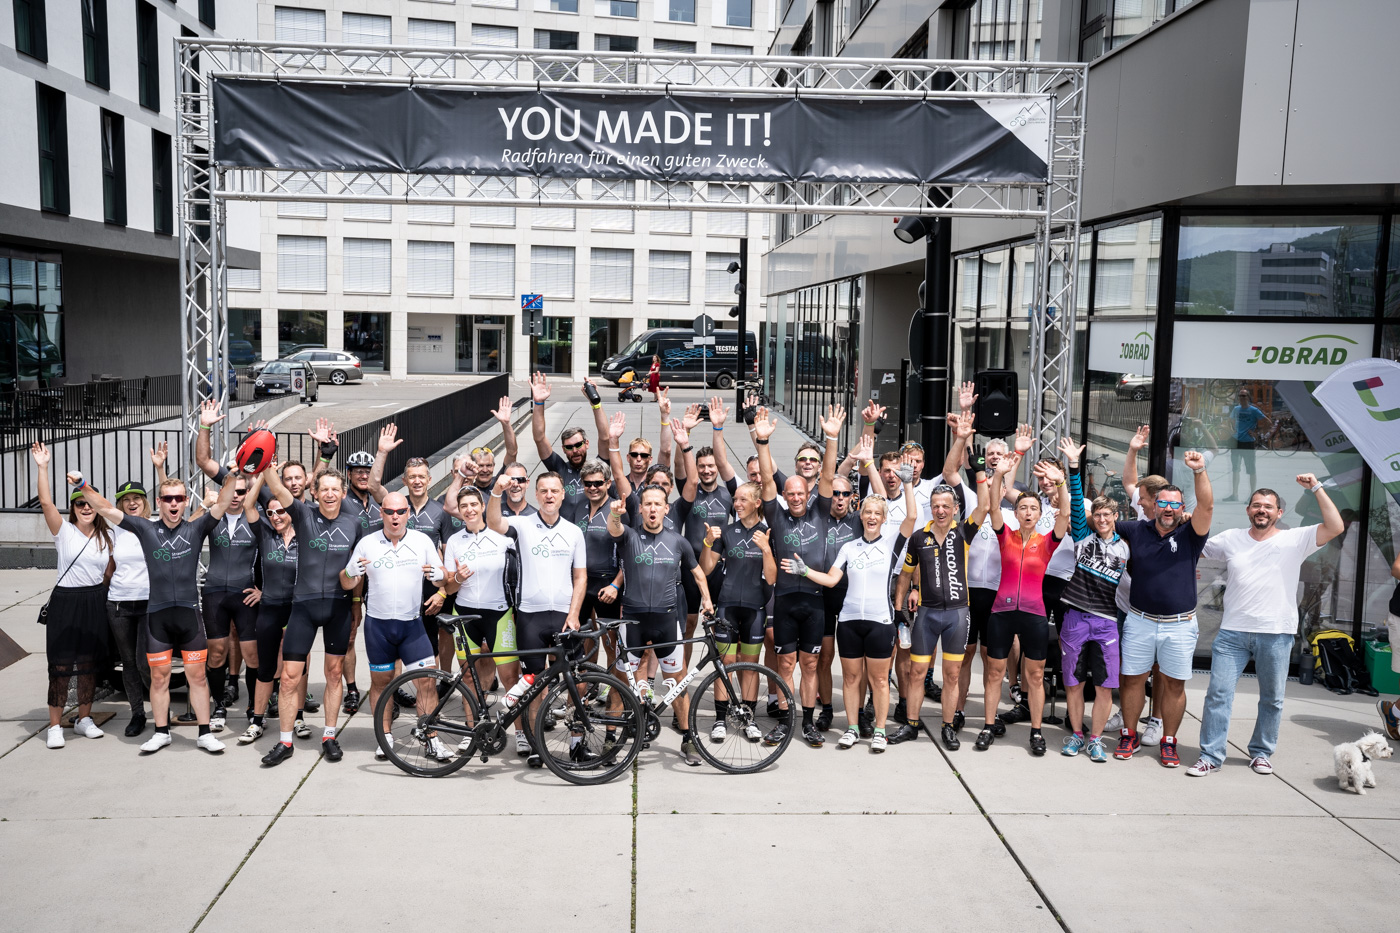 beitune Wunschtour - Teamevent mit Rennrädern/Rennradtour